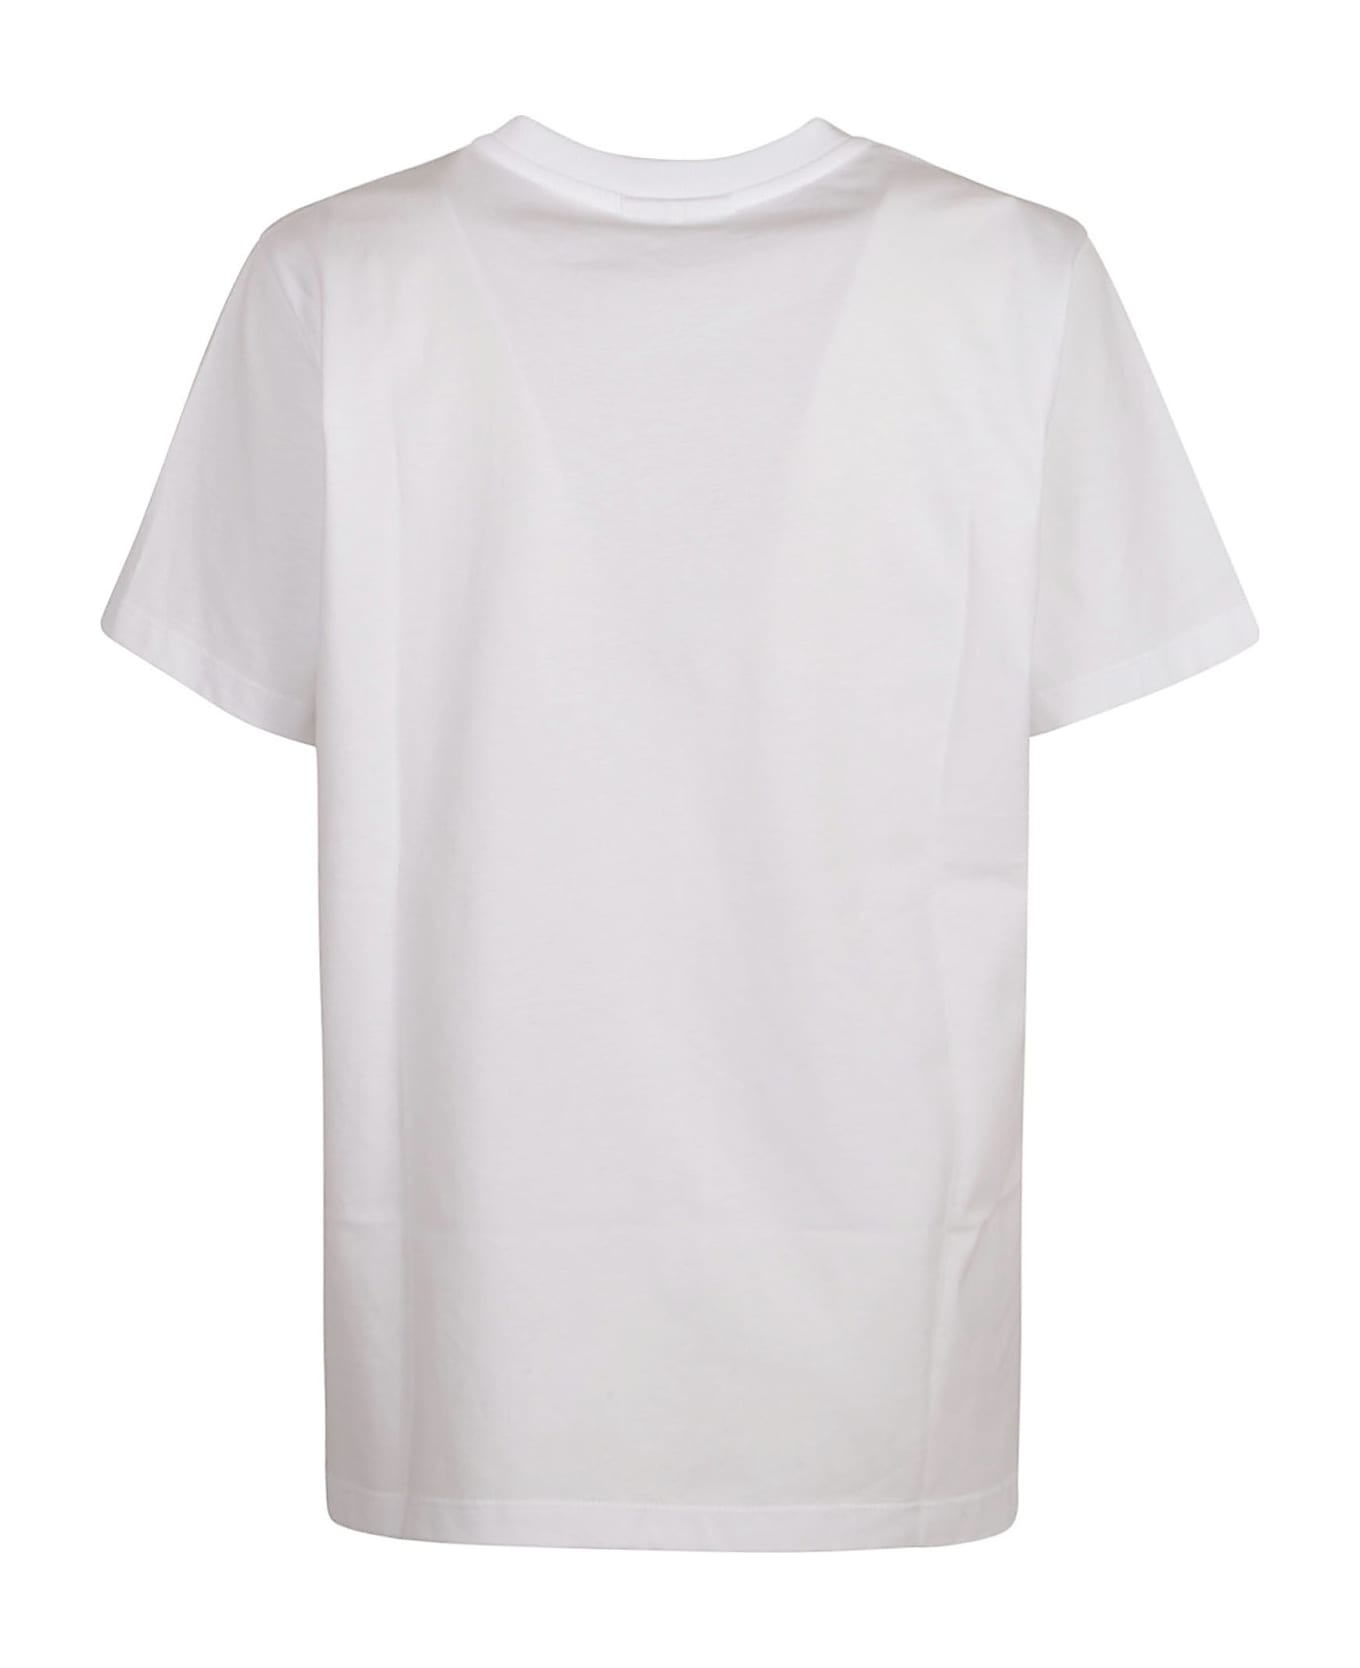 Ganni Banana T-shirt - Bright White Tシャツ